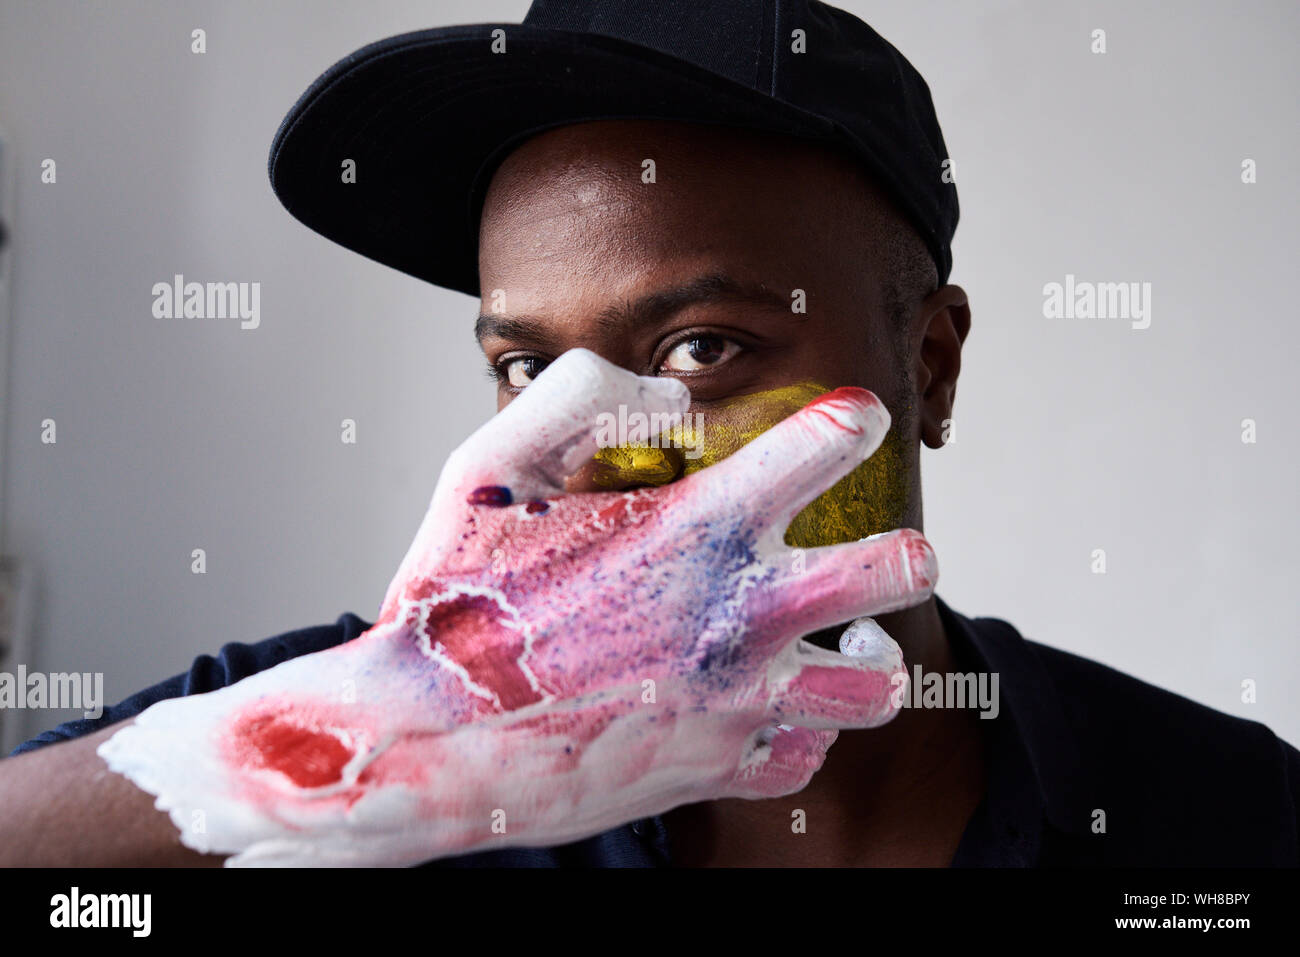 Artiste en colère avec la main couverte de peinture looking at camera Banque D'Images